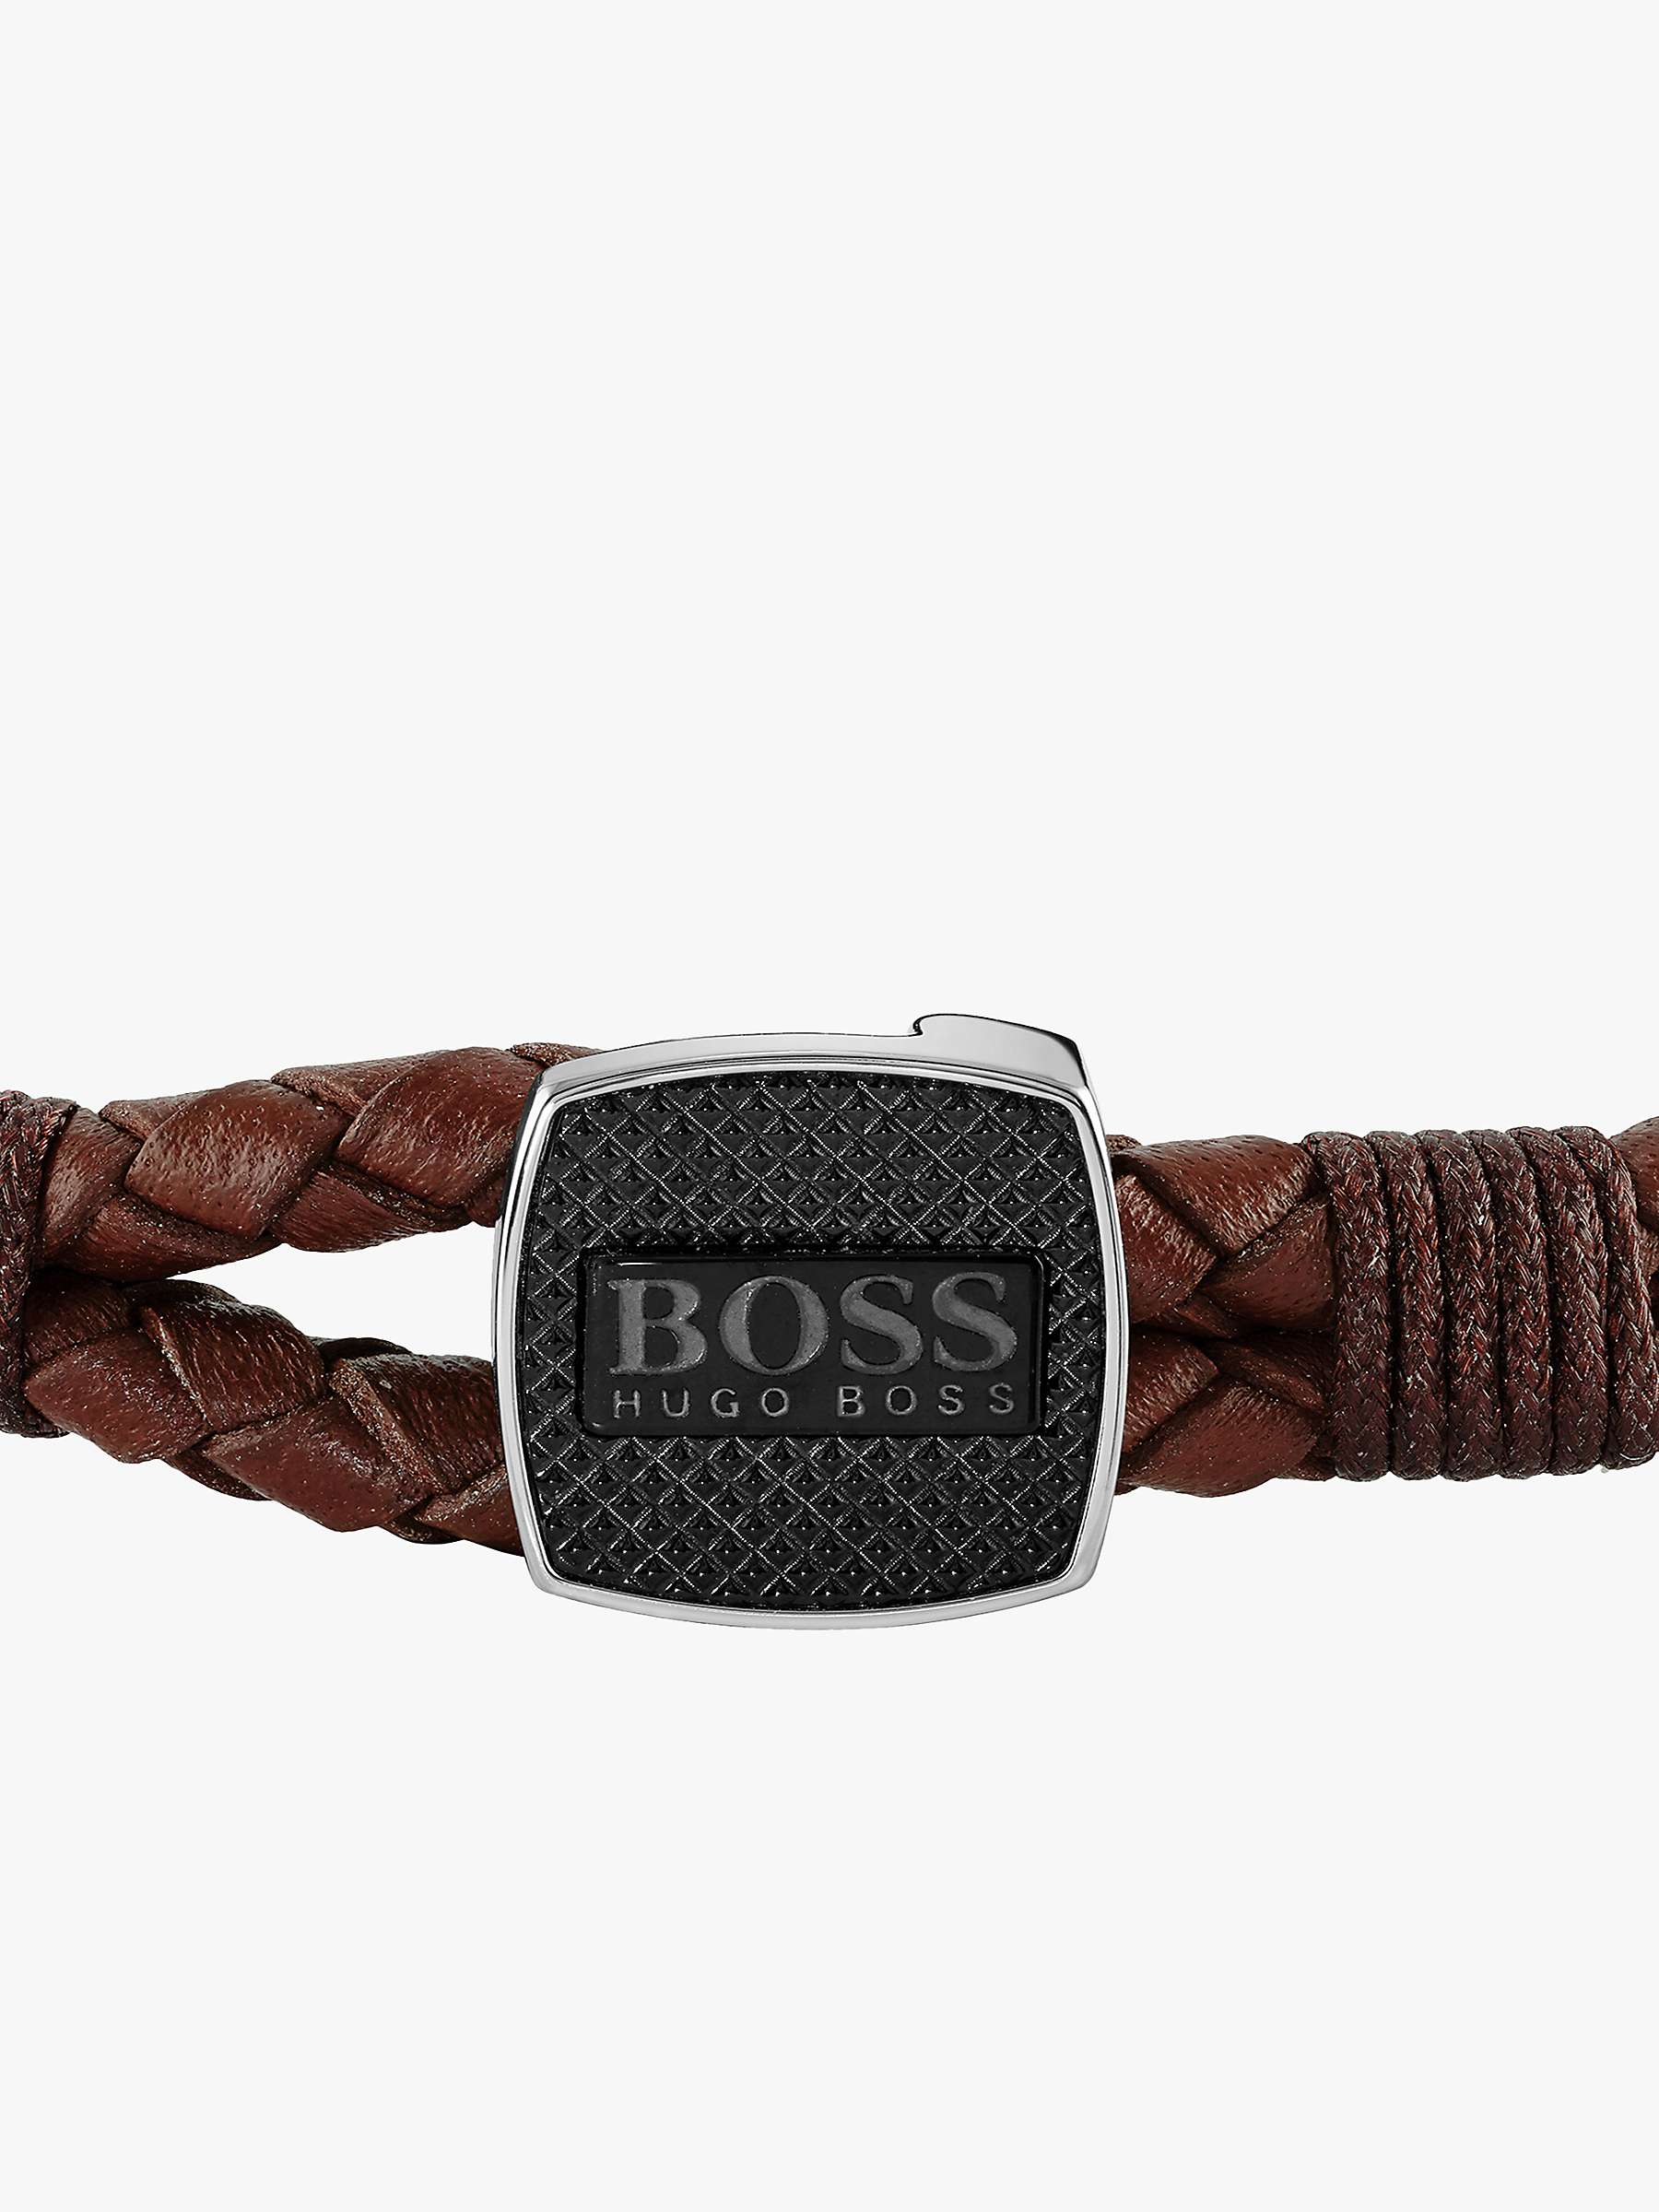 Buy BOSS Men's Braided Leather Bracelet Online at johnlewis.com